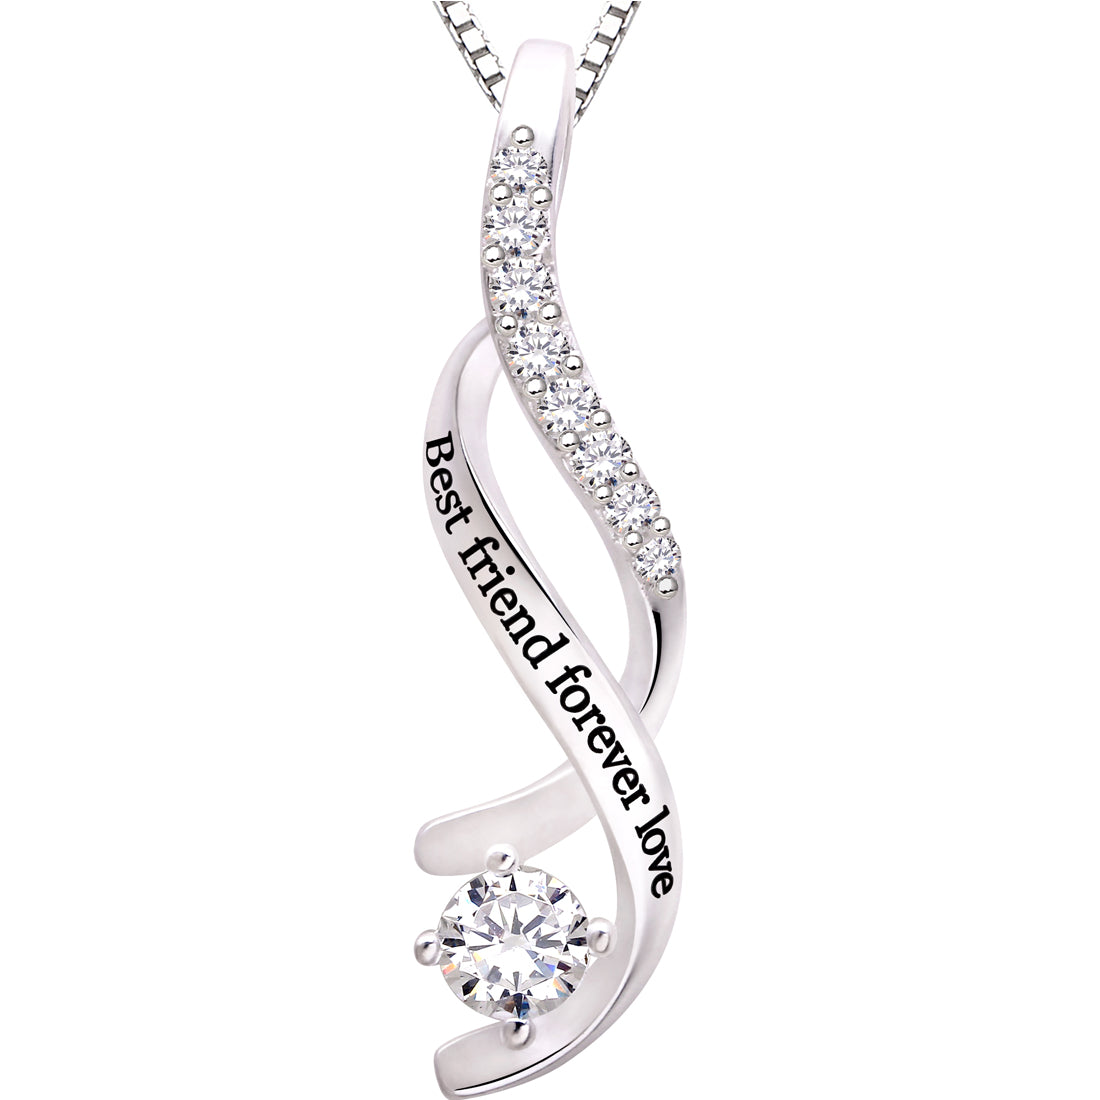 ALOV Jewelry Sterlingsilber-Anhänger-Halskette „Bester Freund für immer lieben“ mit kubischem Zirkonia